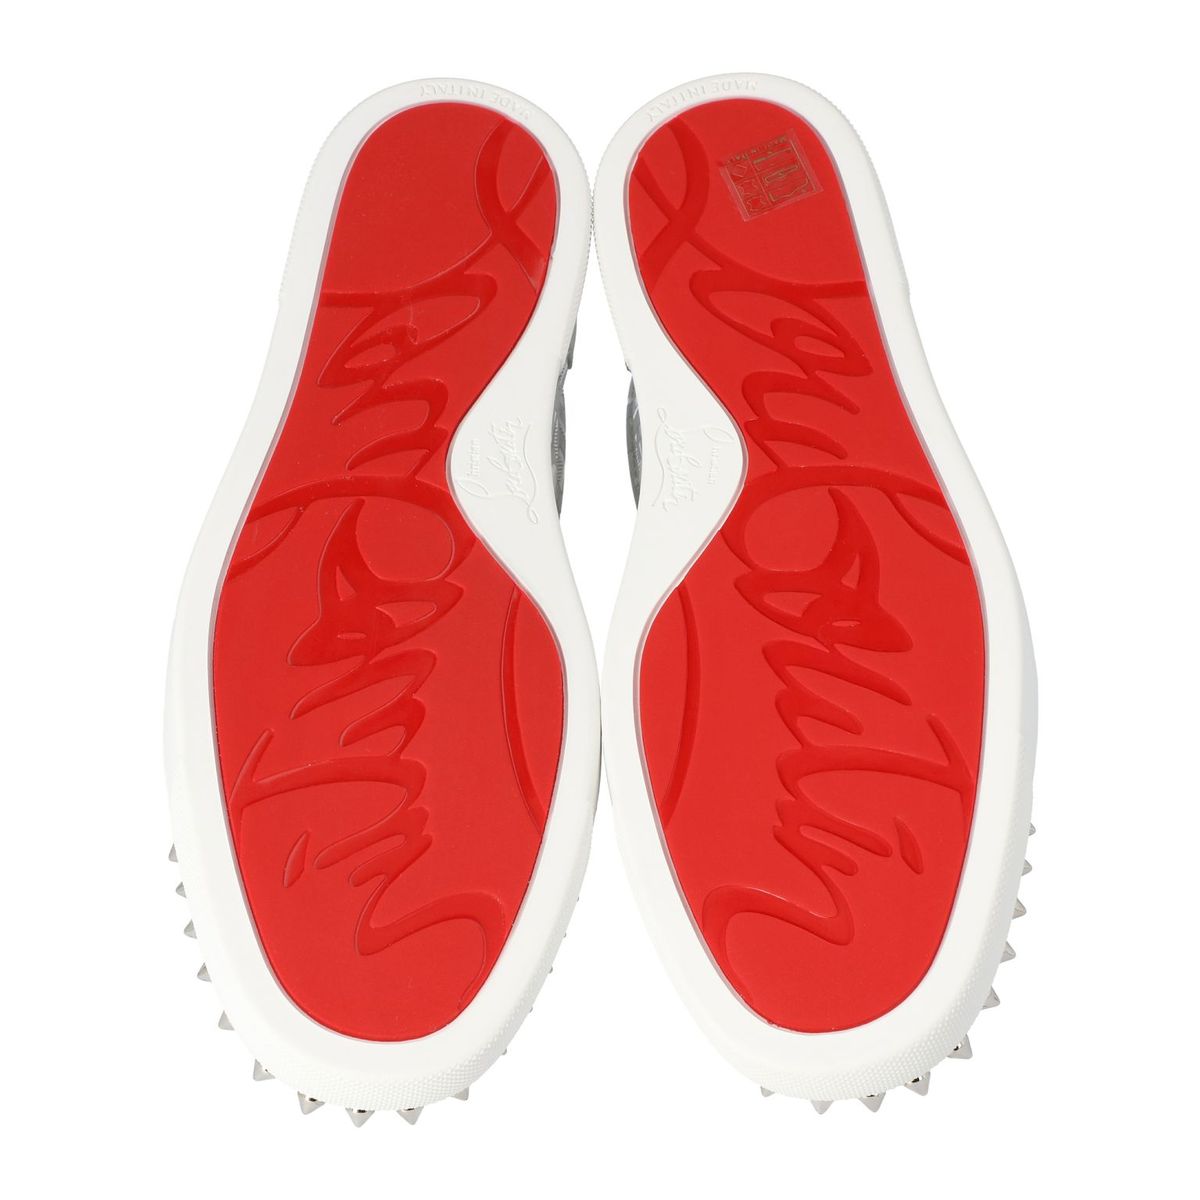 Christian Louboutin Vieirissima Perforated White Leather Sneakers Vier –  AvaMaria